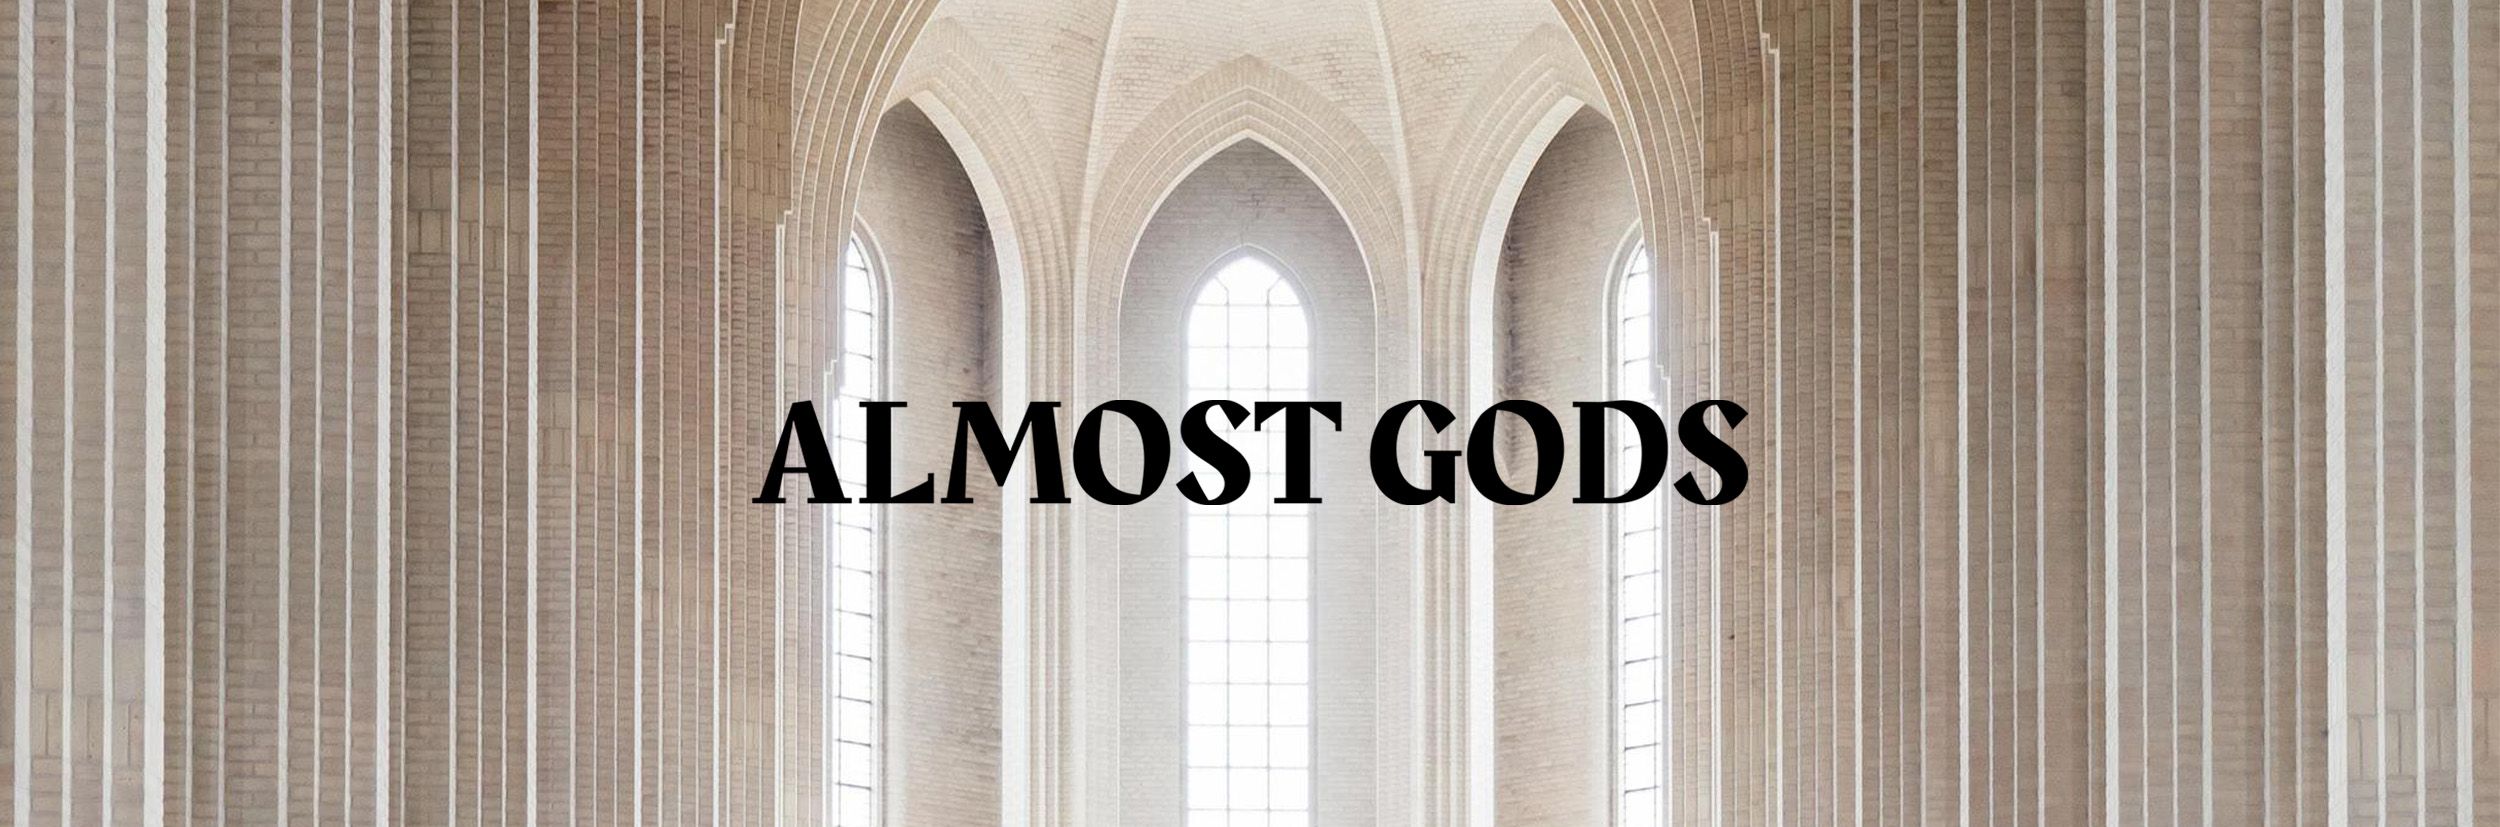 Almost Gods